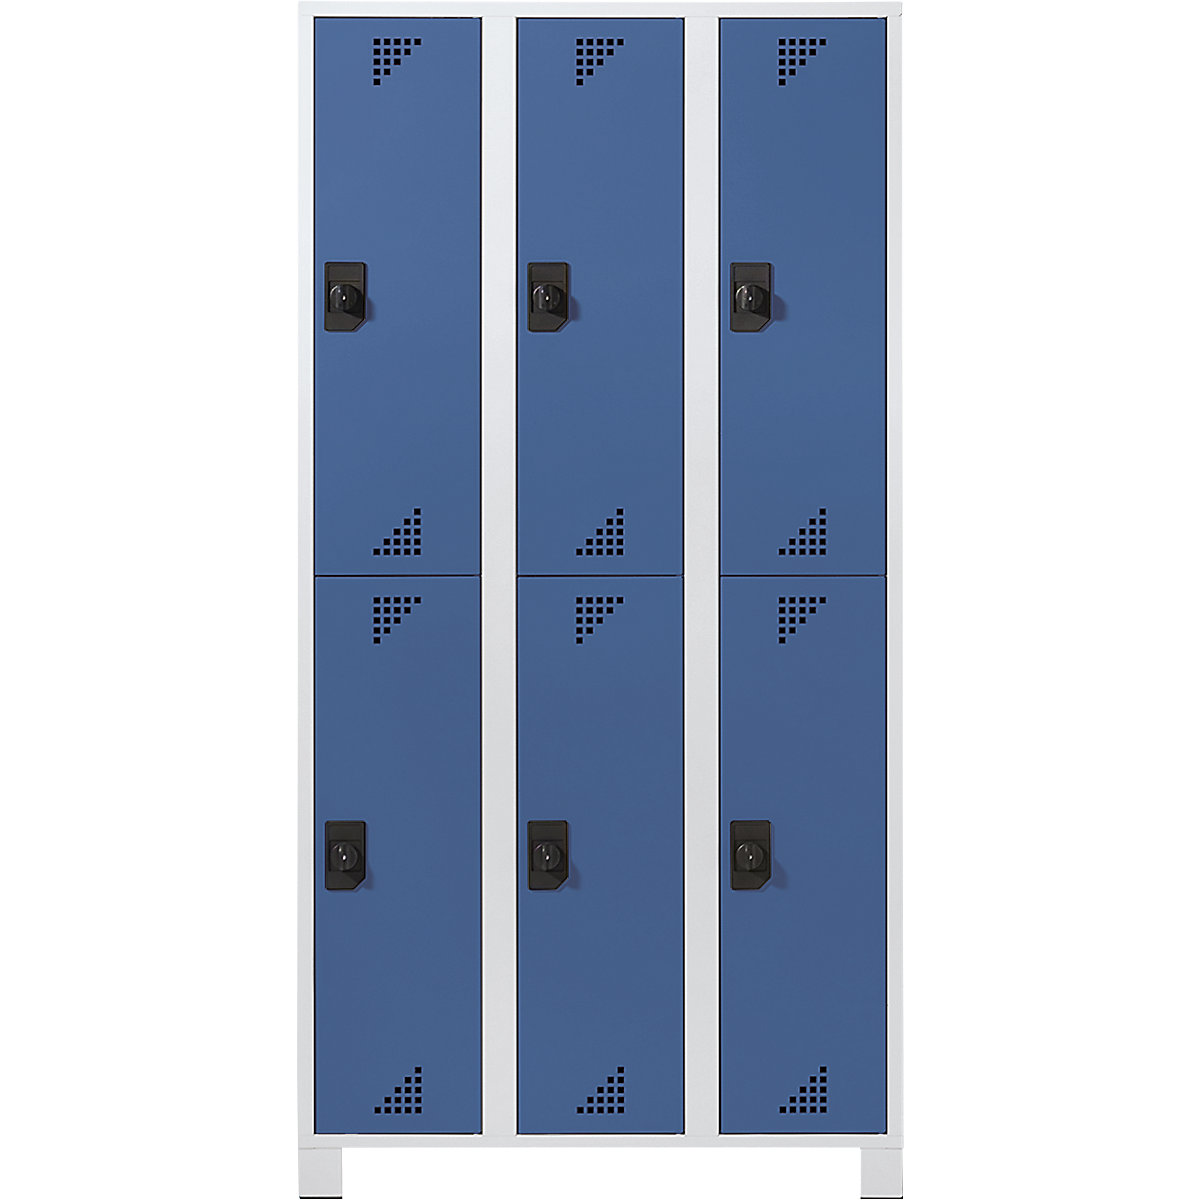 Šatní skříň s oddíly v poloviční výšce – eurokraft pro, v x š x h 1800 x 1200 x 500 mm, 6 oddílů, korpus světle šedý, dveře jasně modré-5